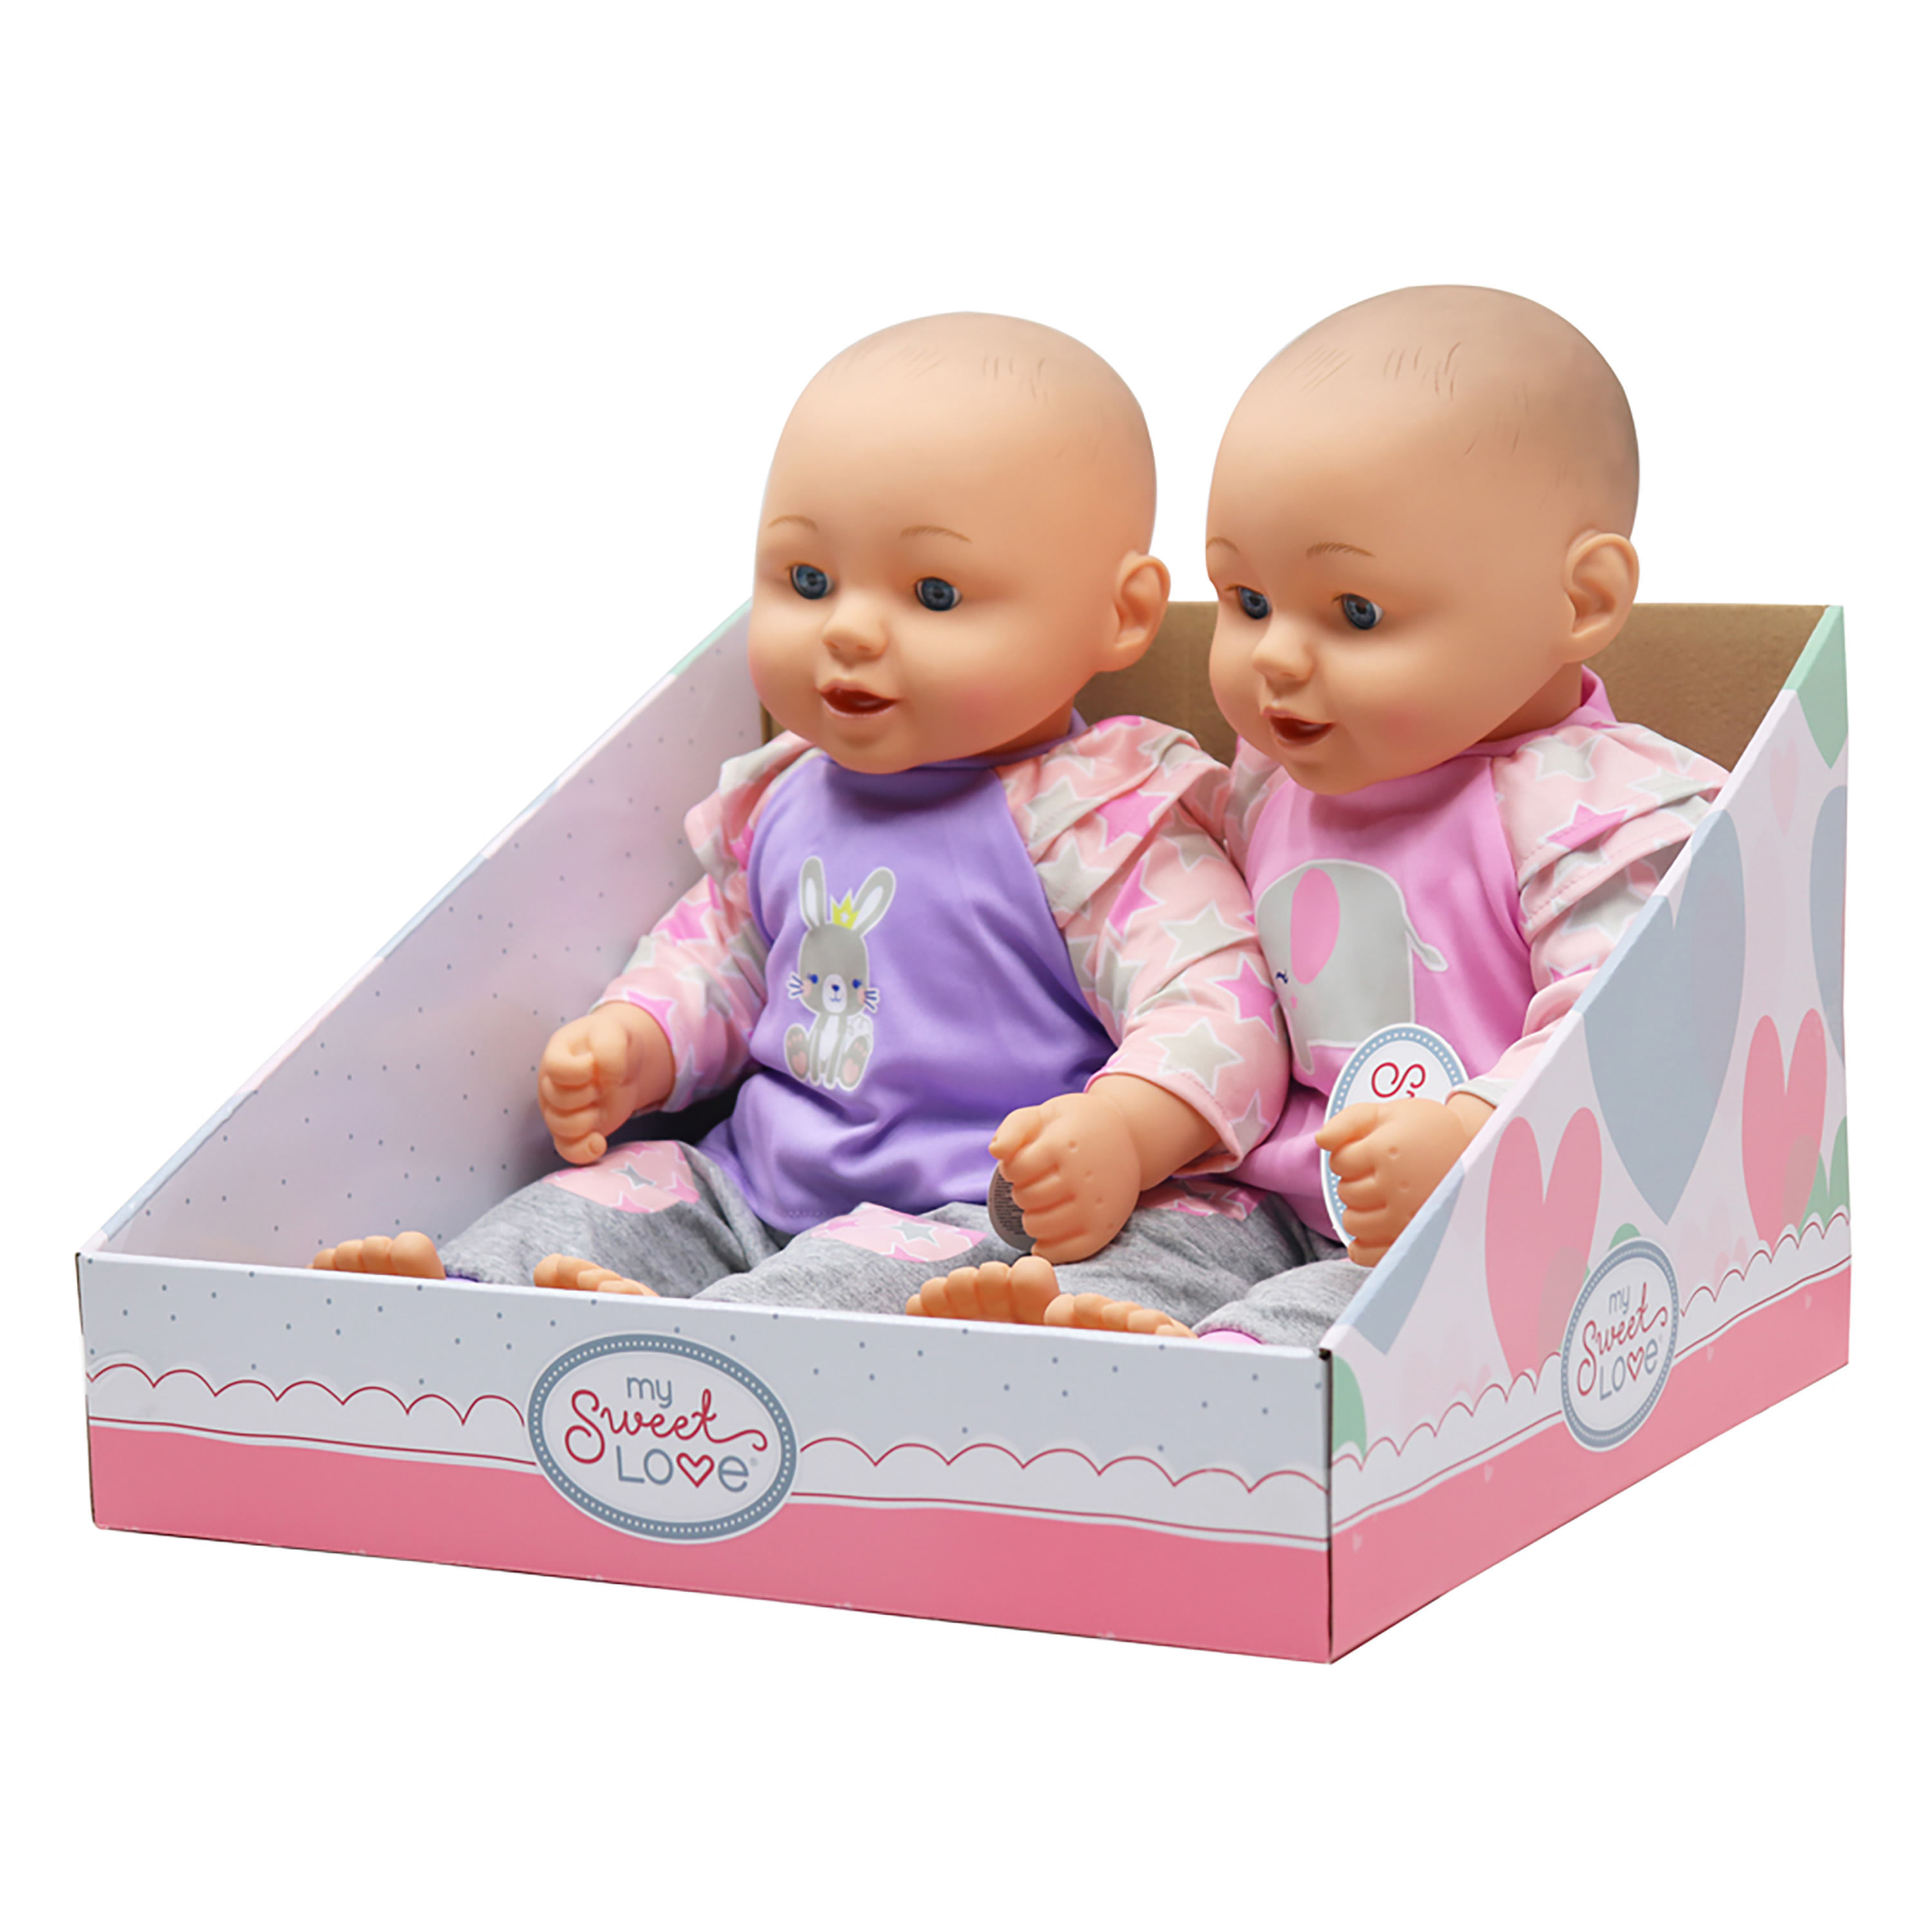  Muñeco bebé de Adora WOOF! Set de regalo para niños de 6 años o  más, de 20 pulgadas, con peso, abrazable, de vinilo, adorable, juguete de  cuerpo suave